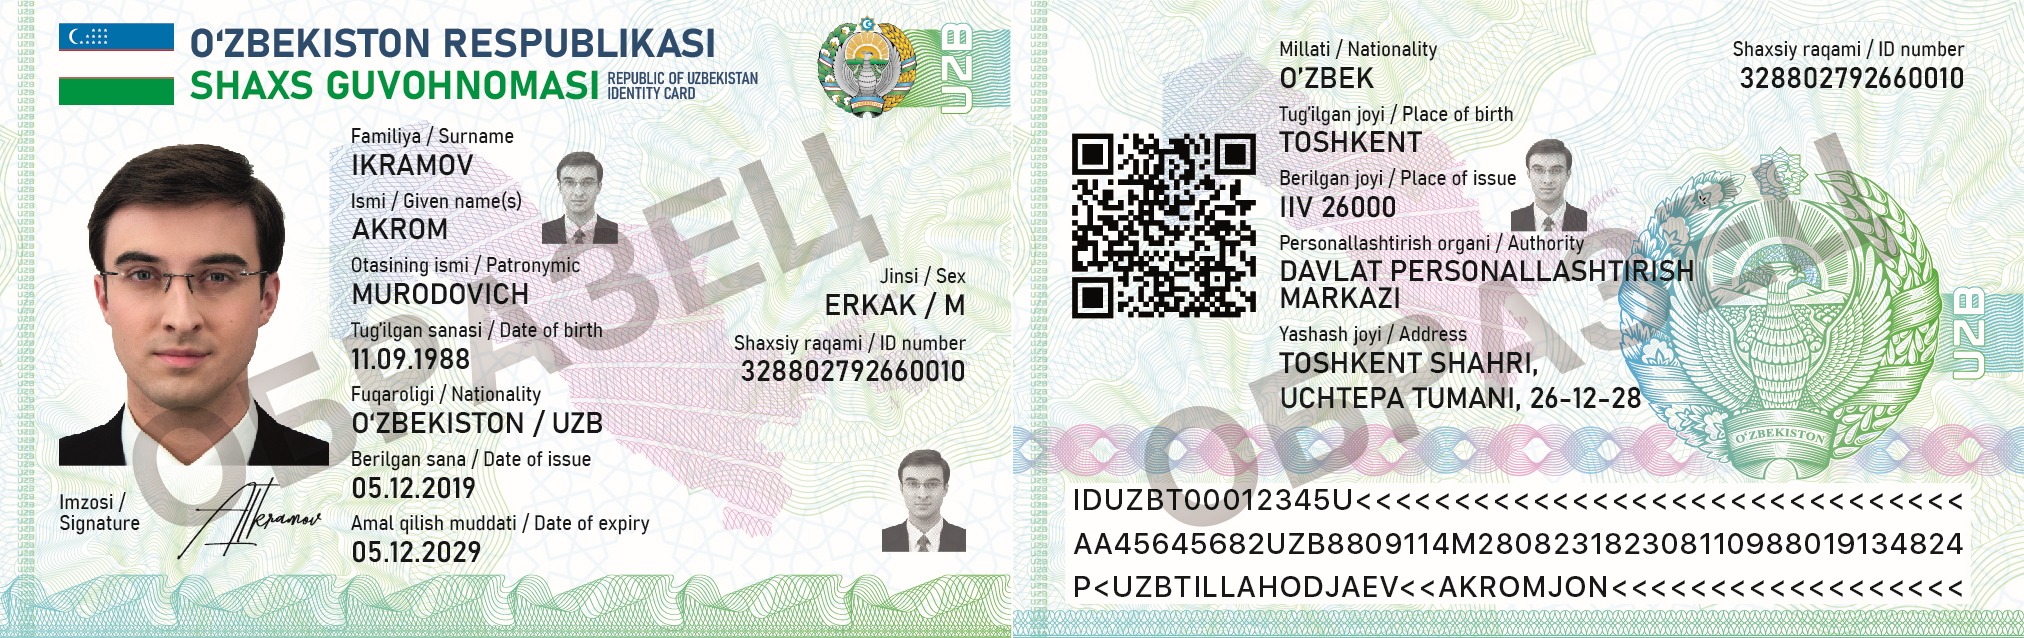 Ву инди. ID karta в Узбекистане. ID Card Узбекистан.